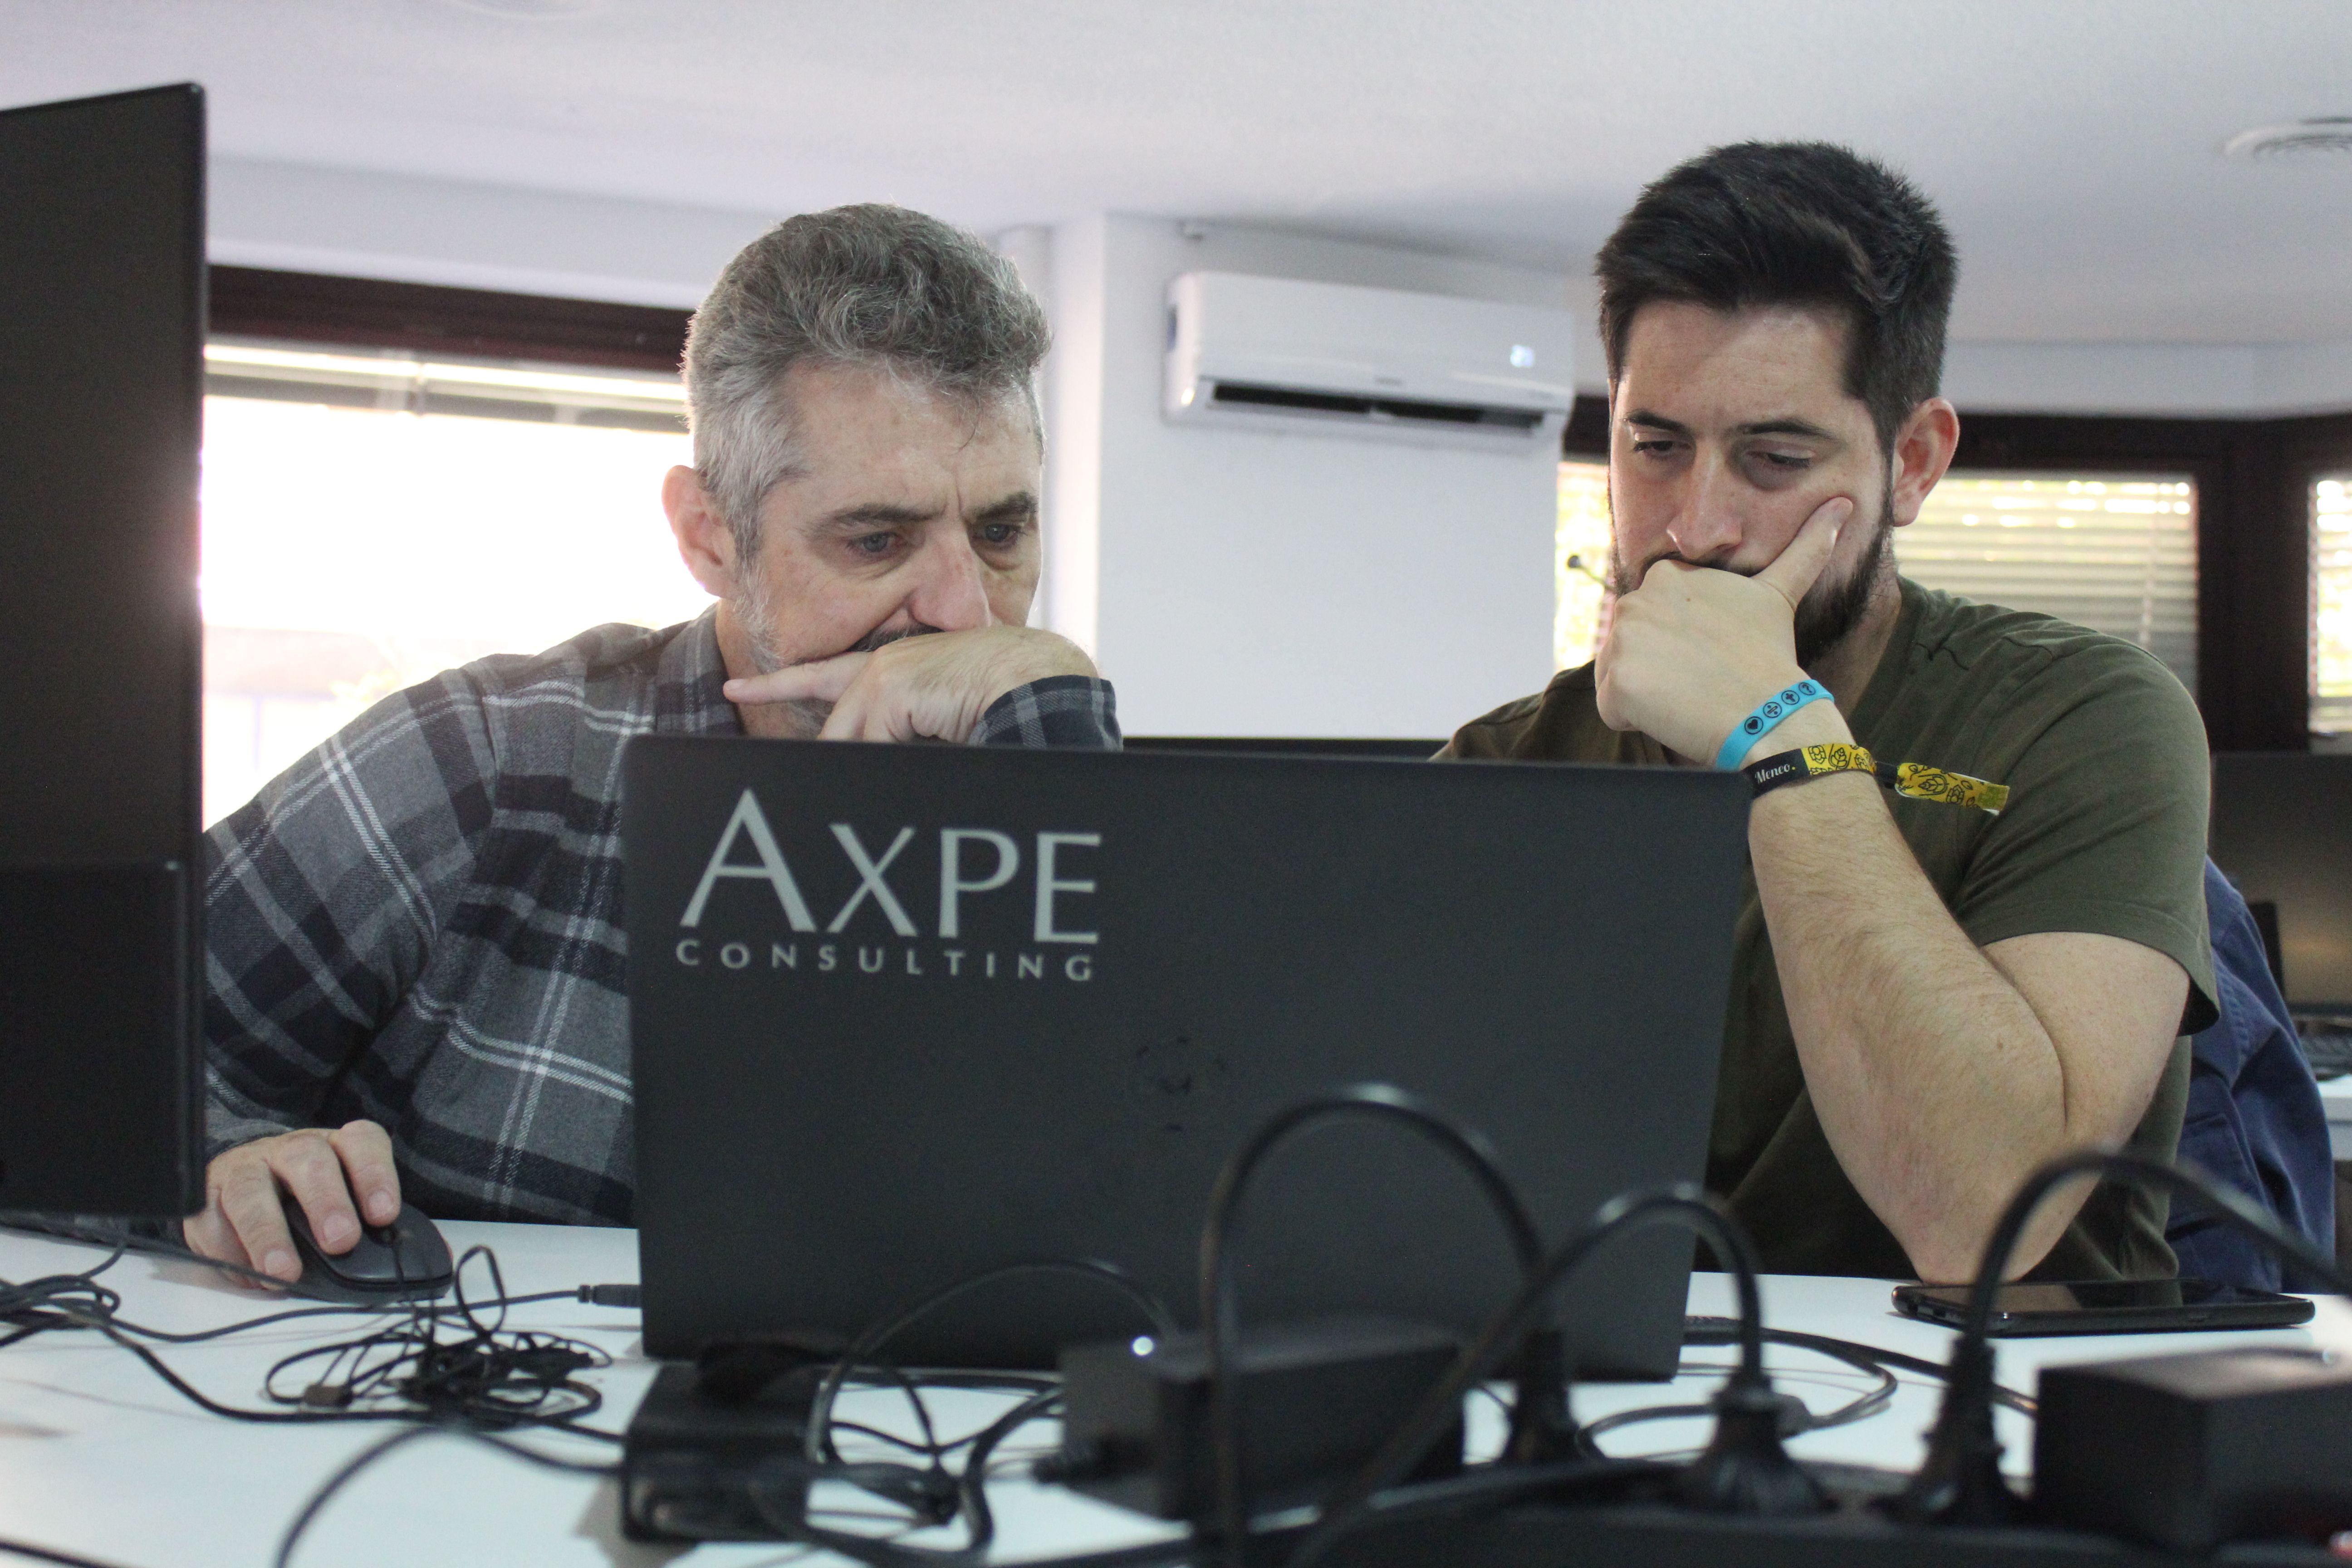 Inauguración de Uxcale en las oficinas de AXPE